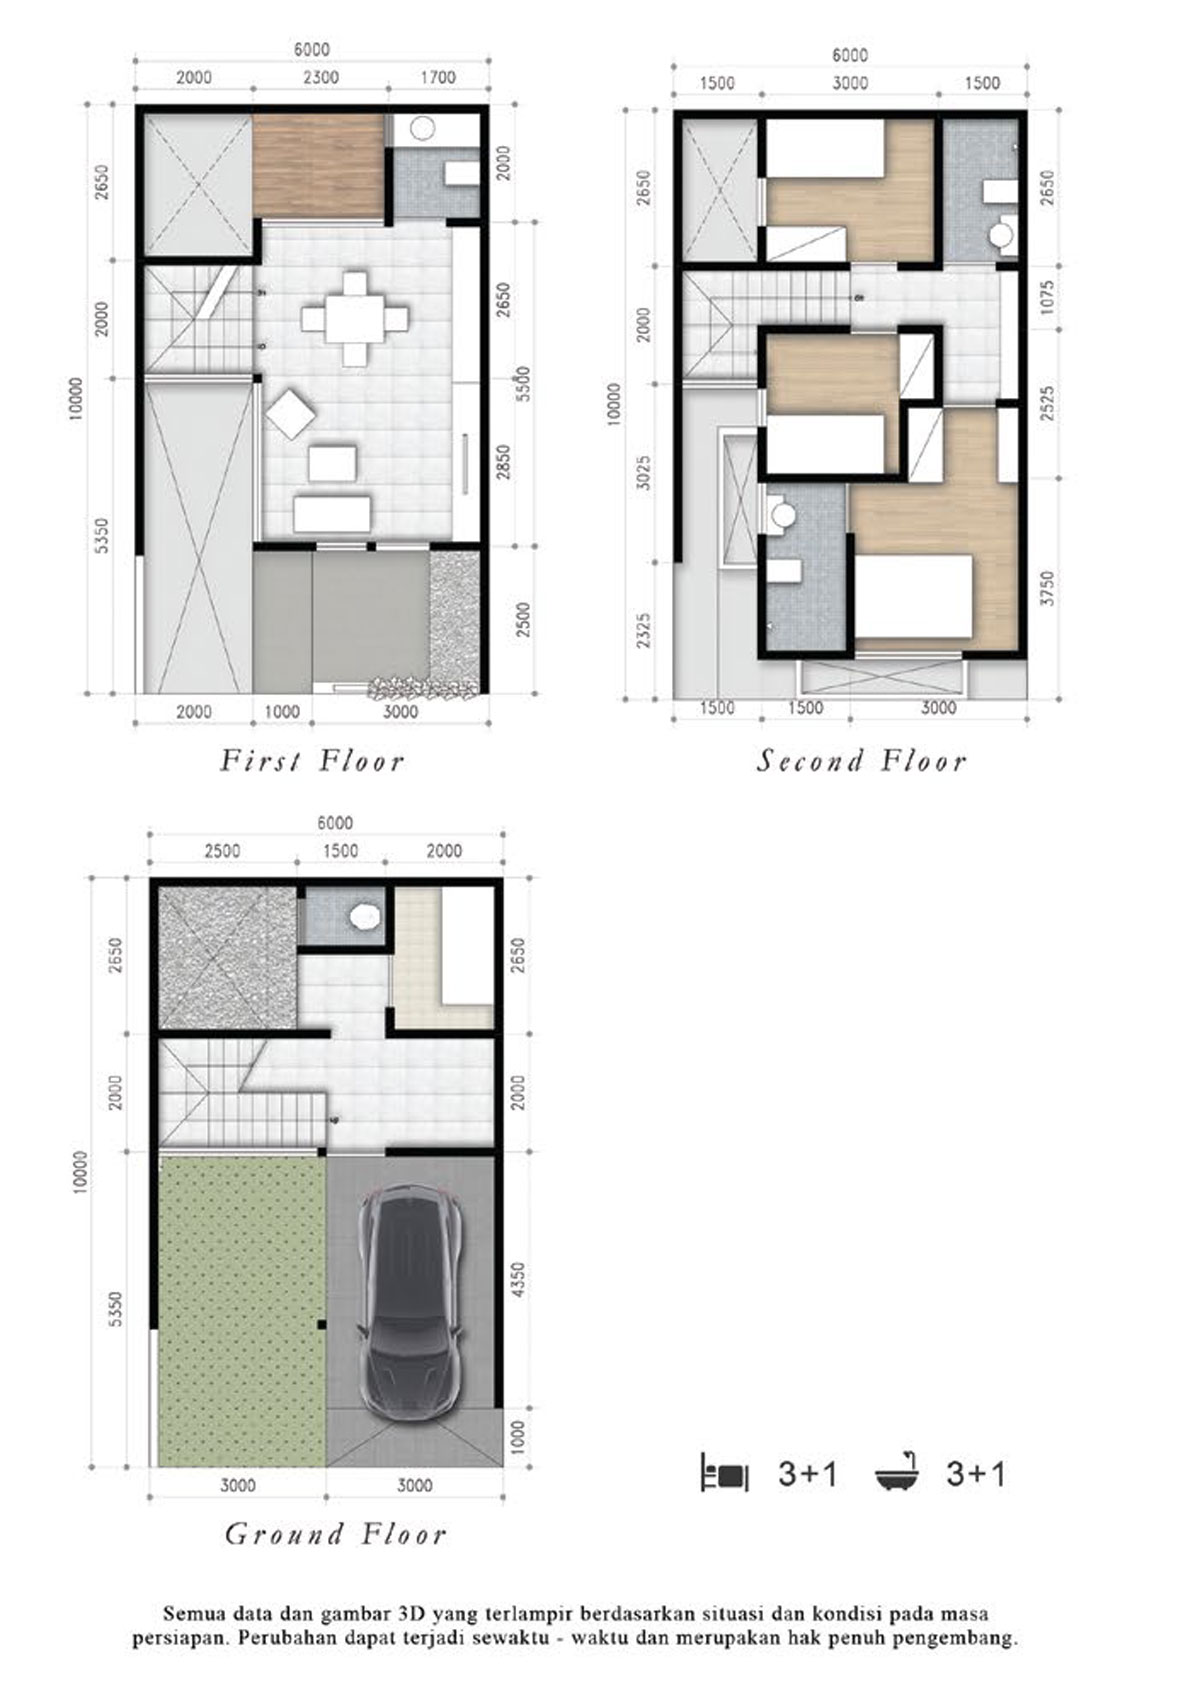 Sket Rumah Modern 3 Lantai